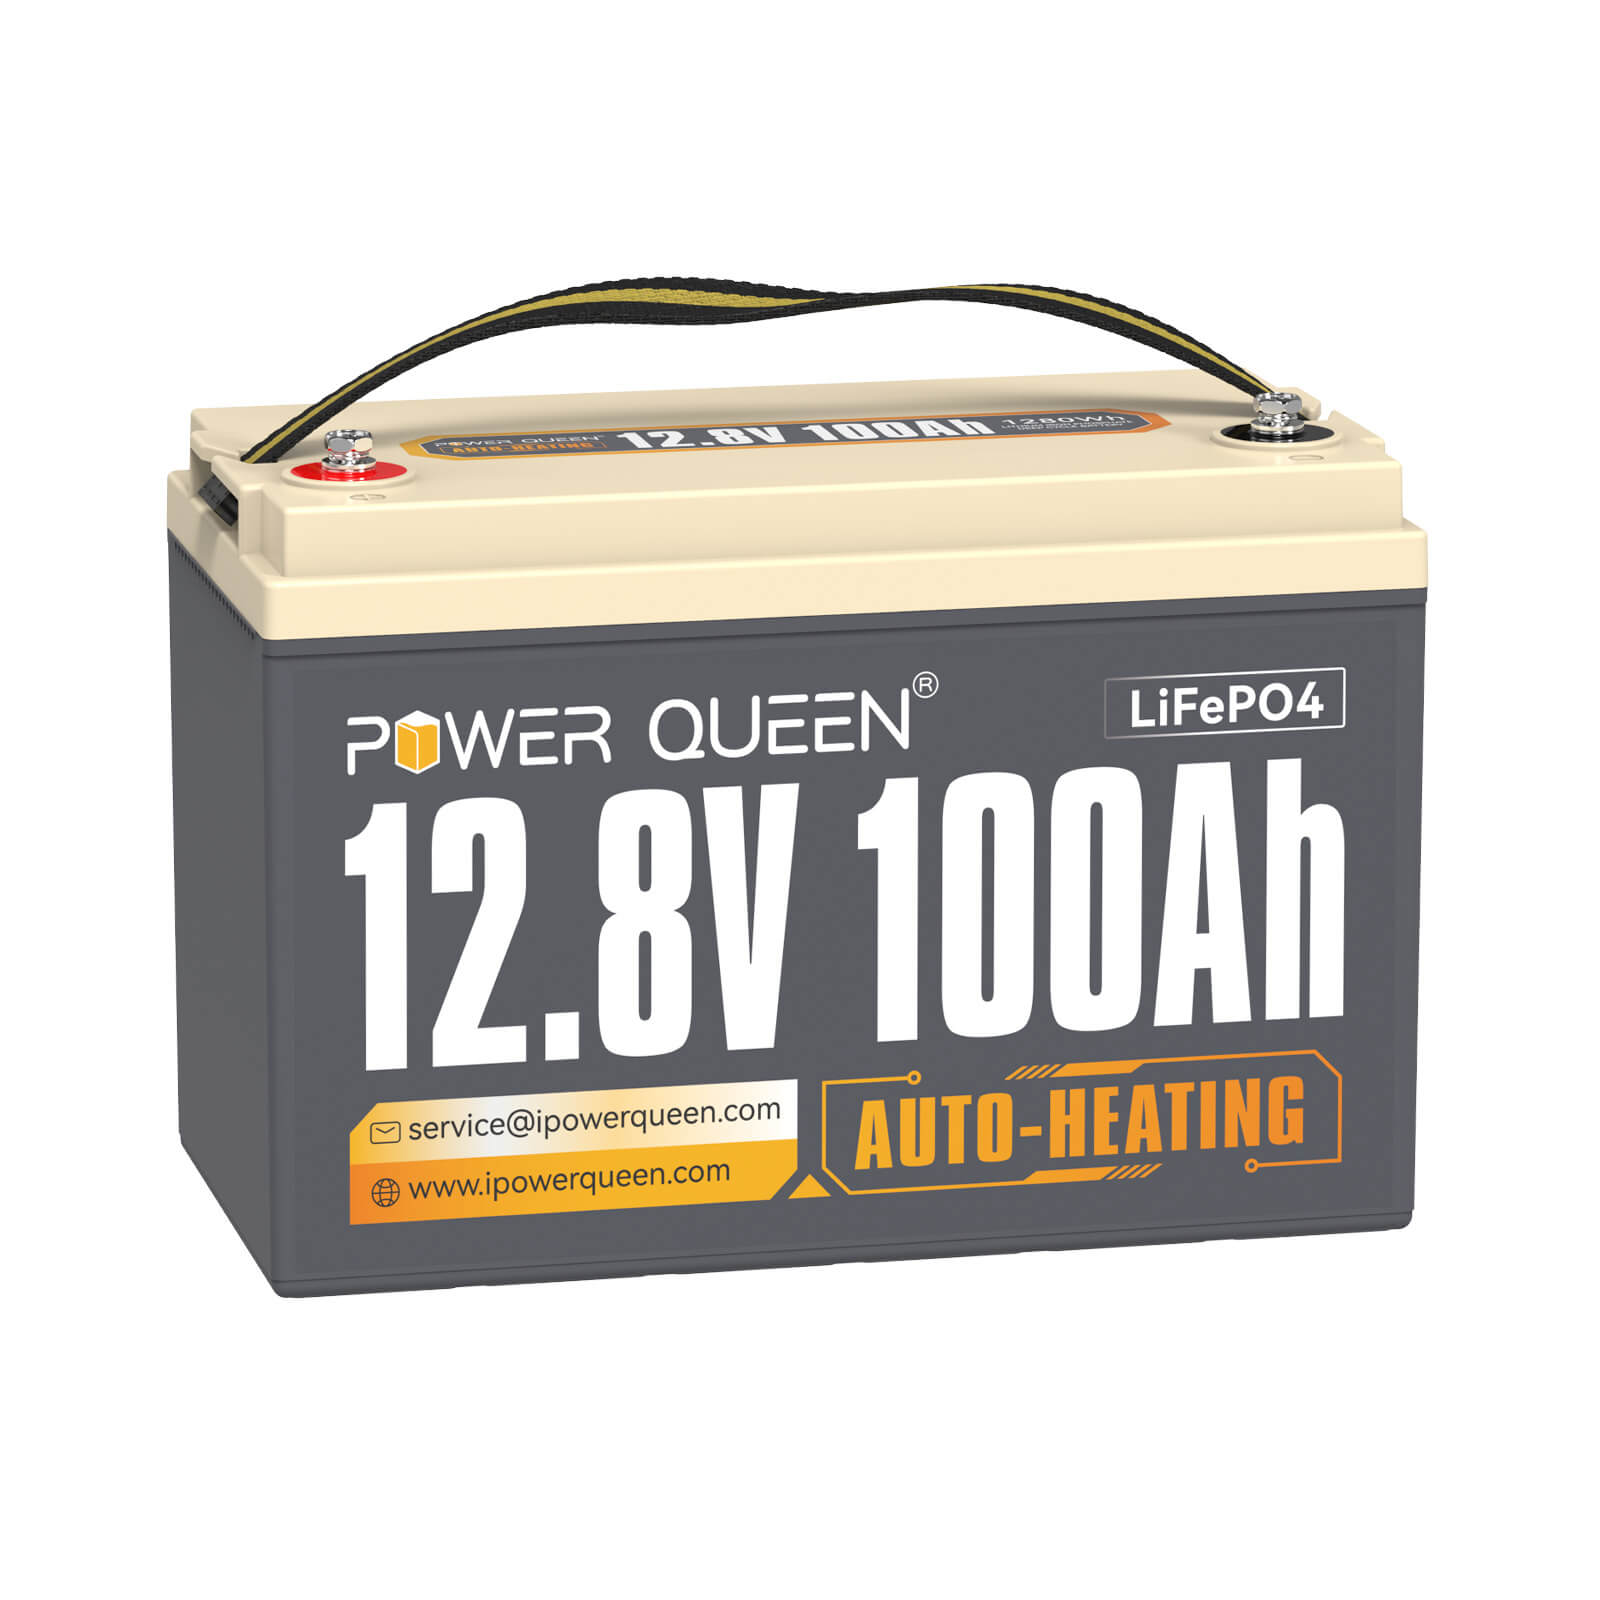 【Als nieuw】Power Queen 12,8 V 100 Ah zelfverwarmende LiFePO4-batterij, ingebouwd 100 A BMS